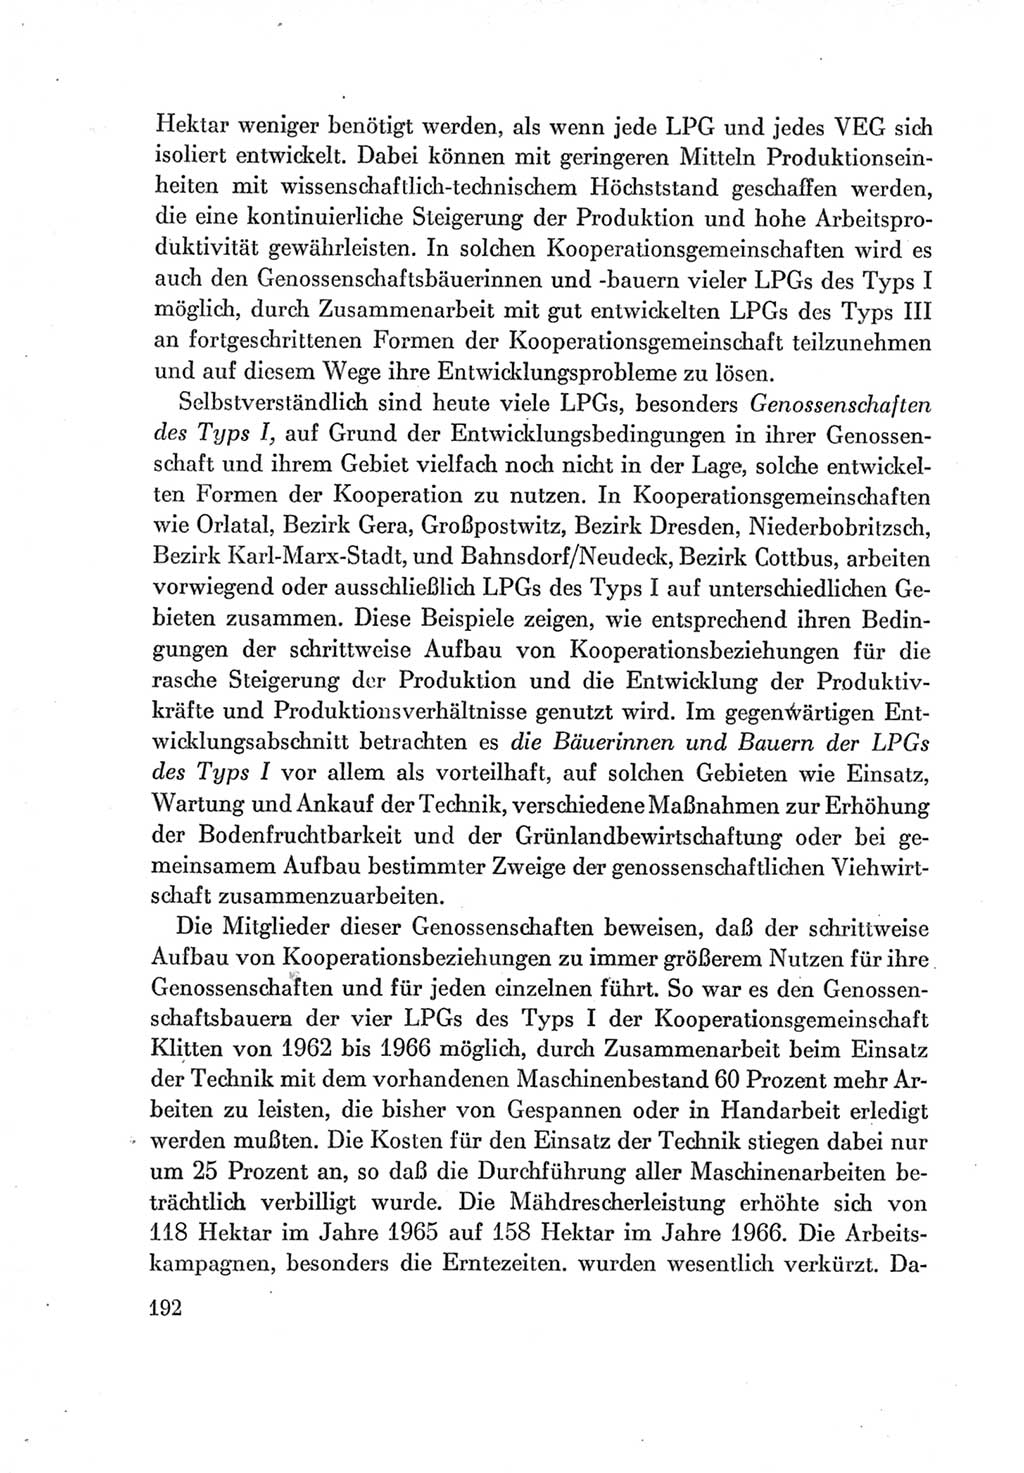 Protokoll der Verhandlungen des Ⅶ. Parteitages der Sozialistischen Einheitspartei Deutschlands (SED) [Deutsche Demokratische Republik (DDR)] 1967, Band Ⅰ, Seite 192 (Prot. Verh. Ⅶ. PT SED DDR 1967, Bd. Ⅰ, S. 192)